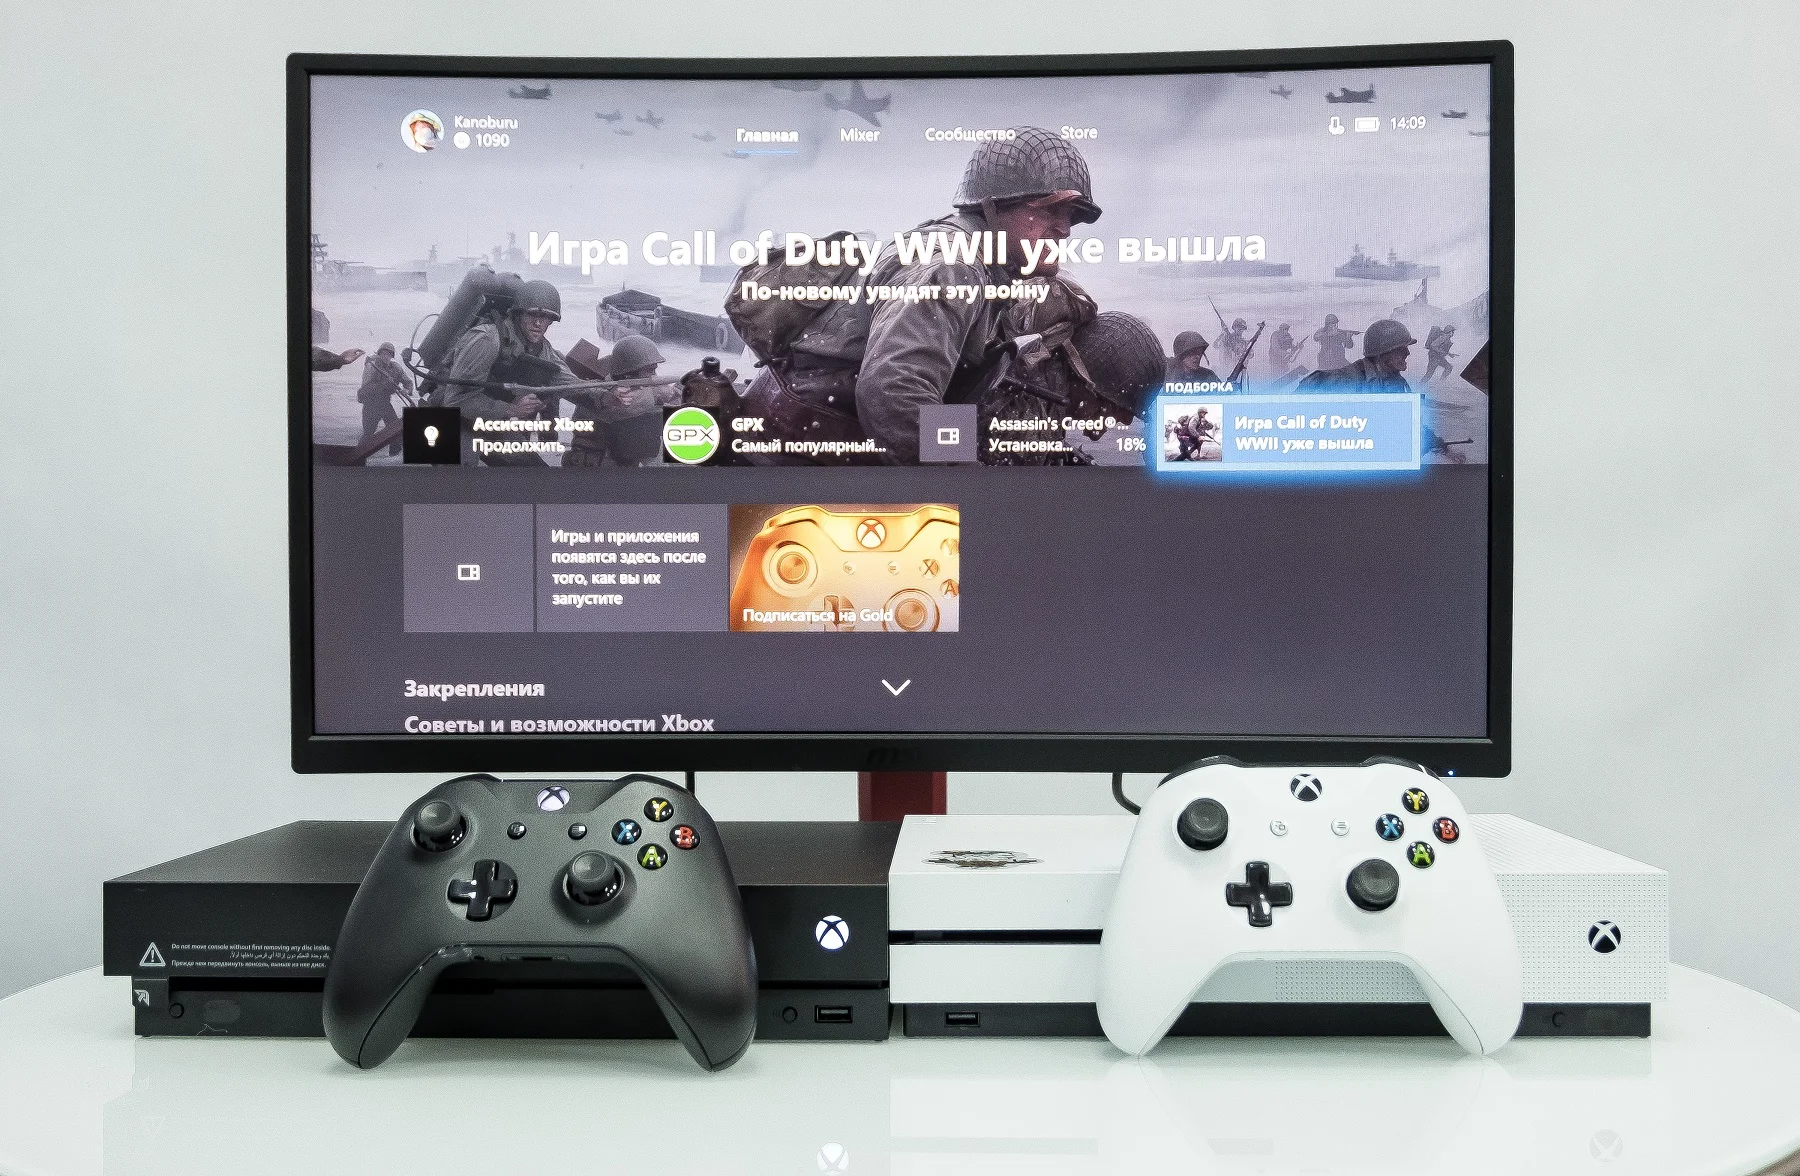 Обзор Xbox One X: Microsoft сделала очень крутую консоль. Надо брать? [+Видео] - фото 5